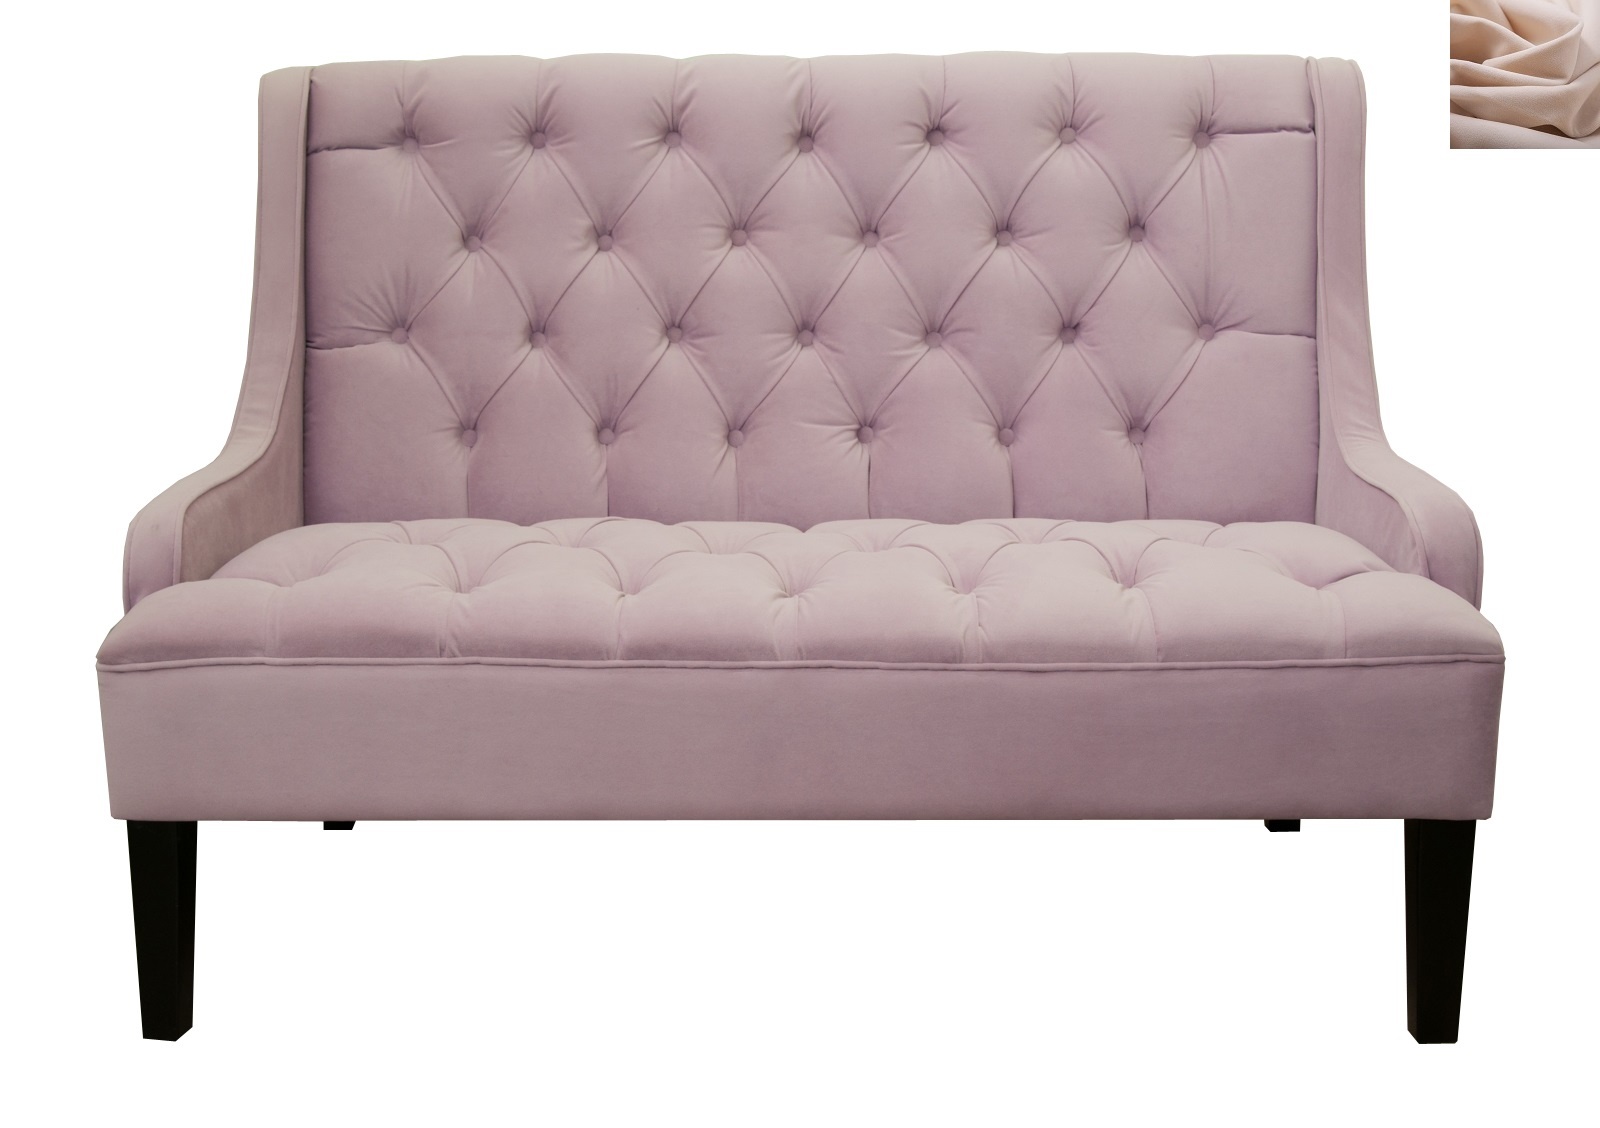 Диван sommet violet розовый mak-interior розовый 125x91x76 см.